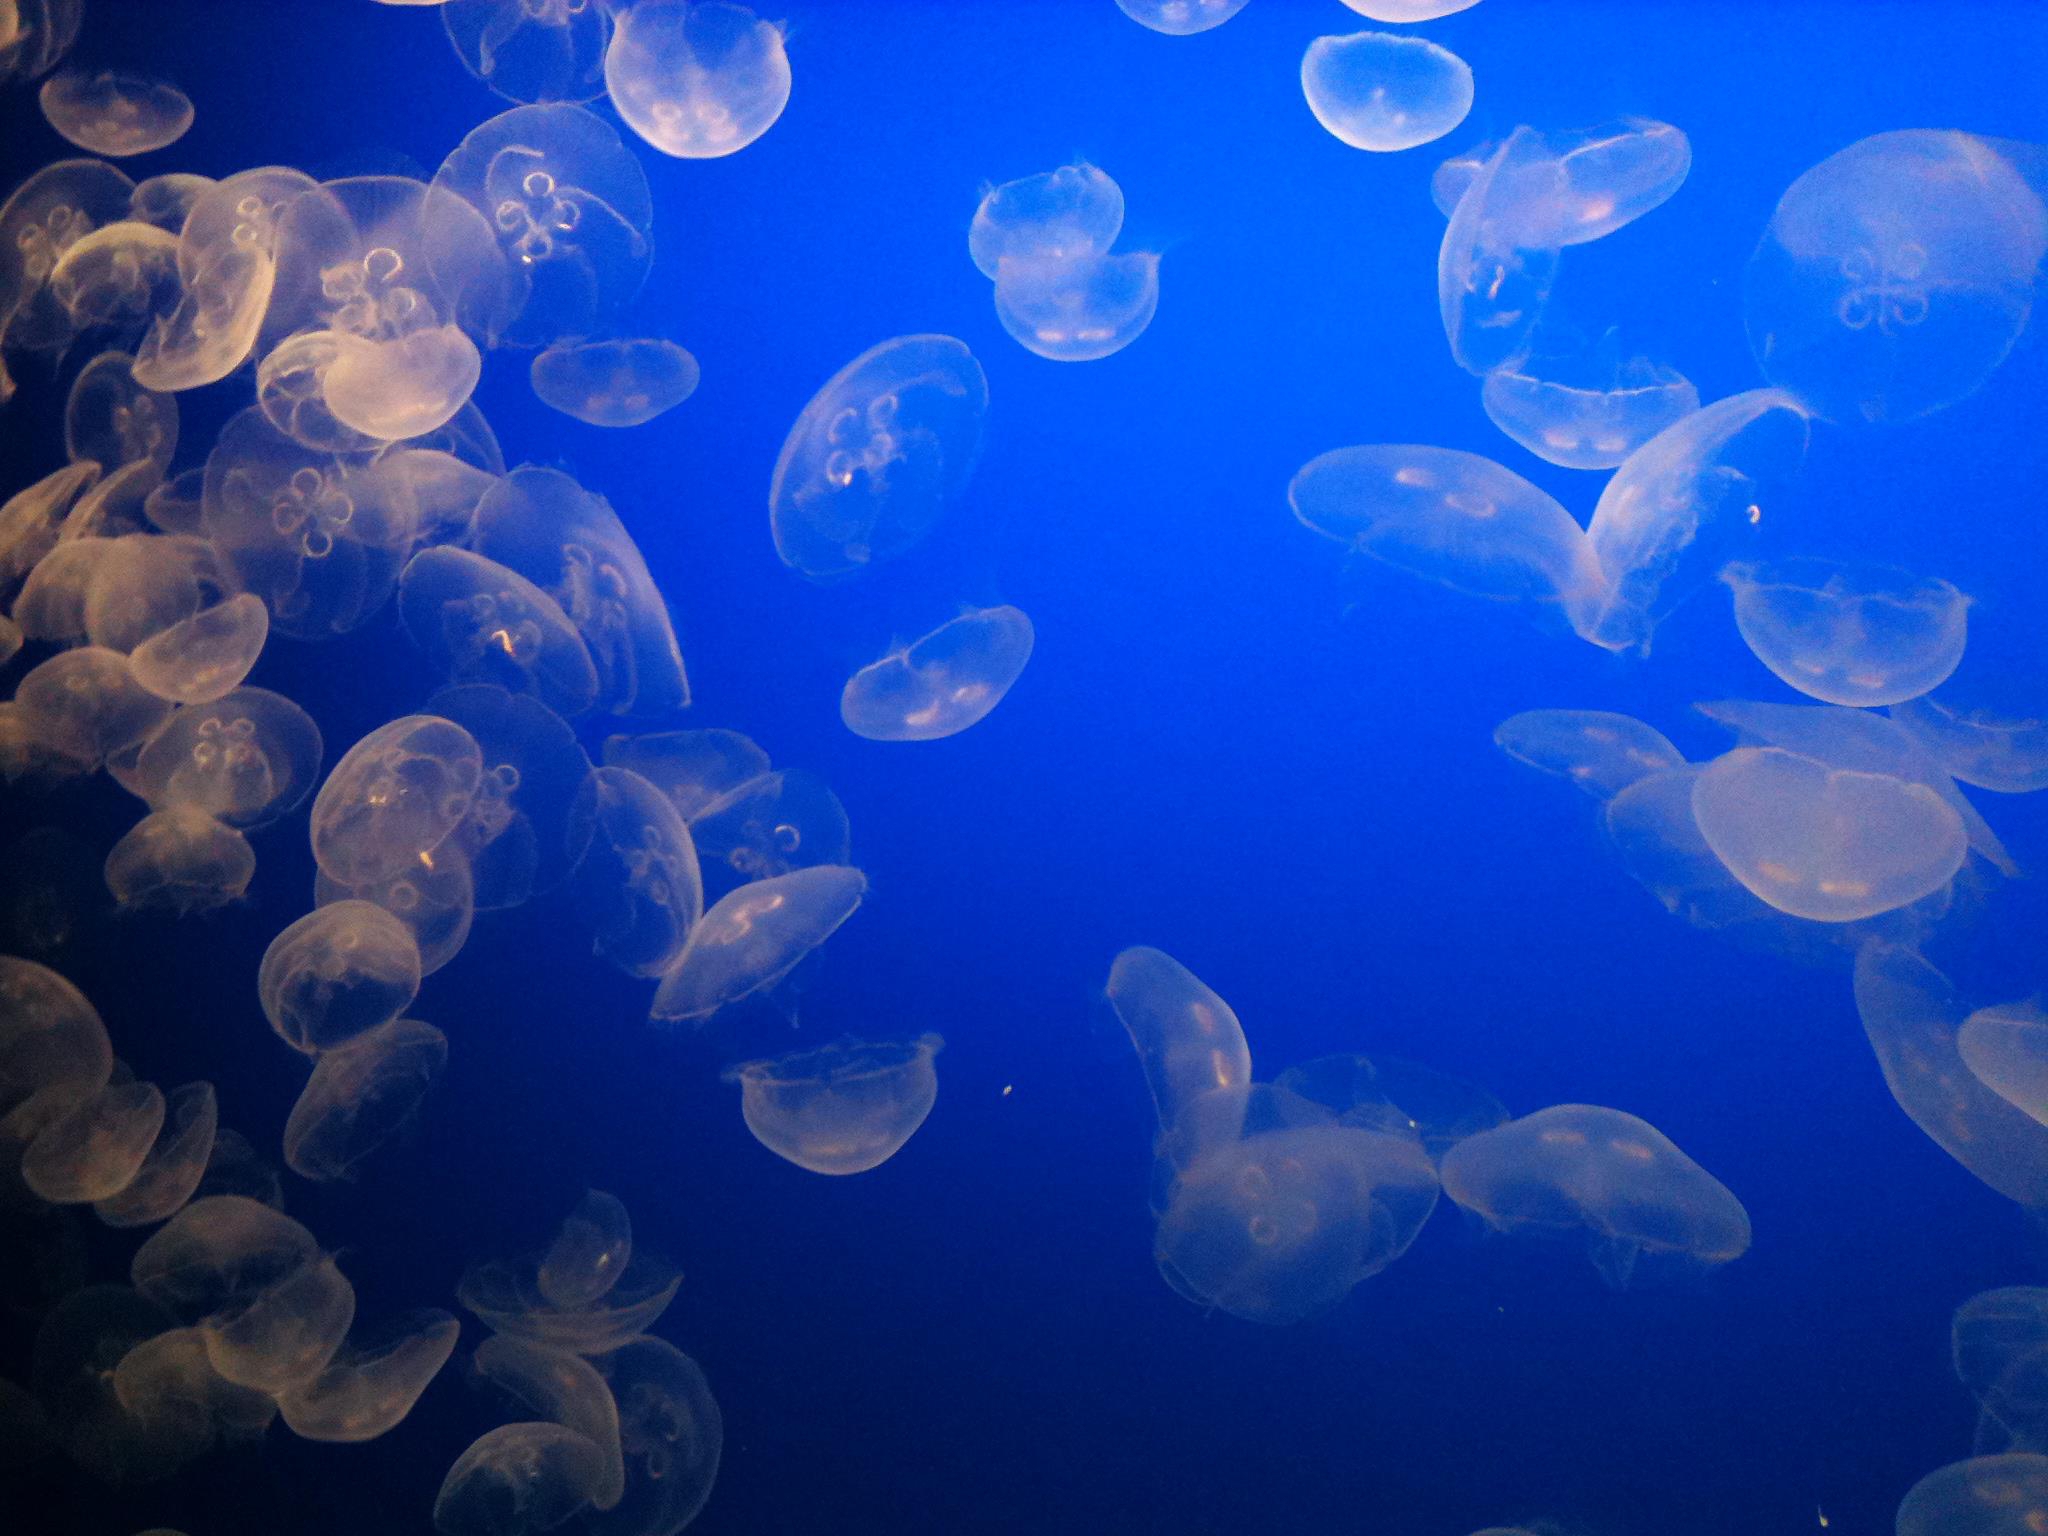 Jellyfish Hd Wallpaper